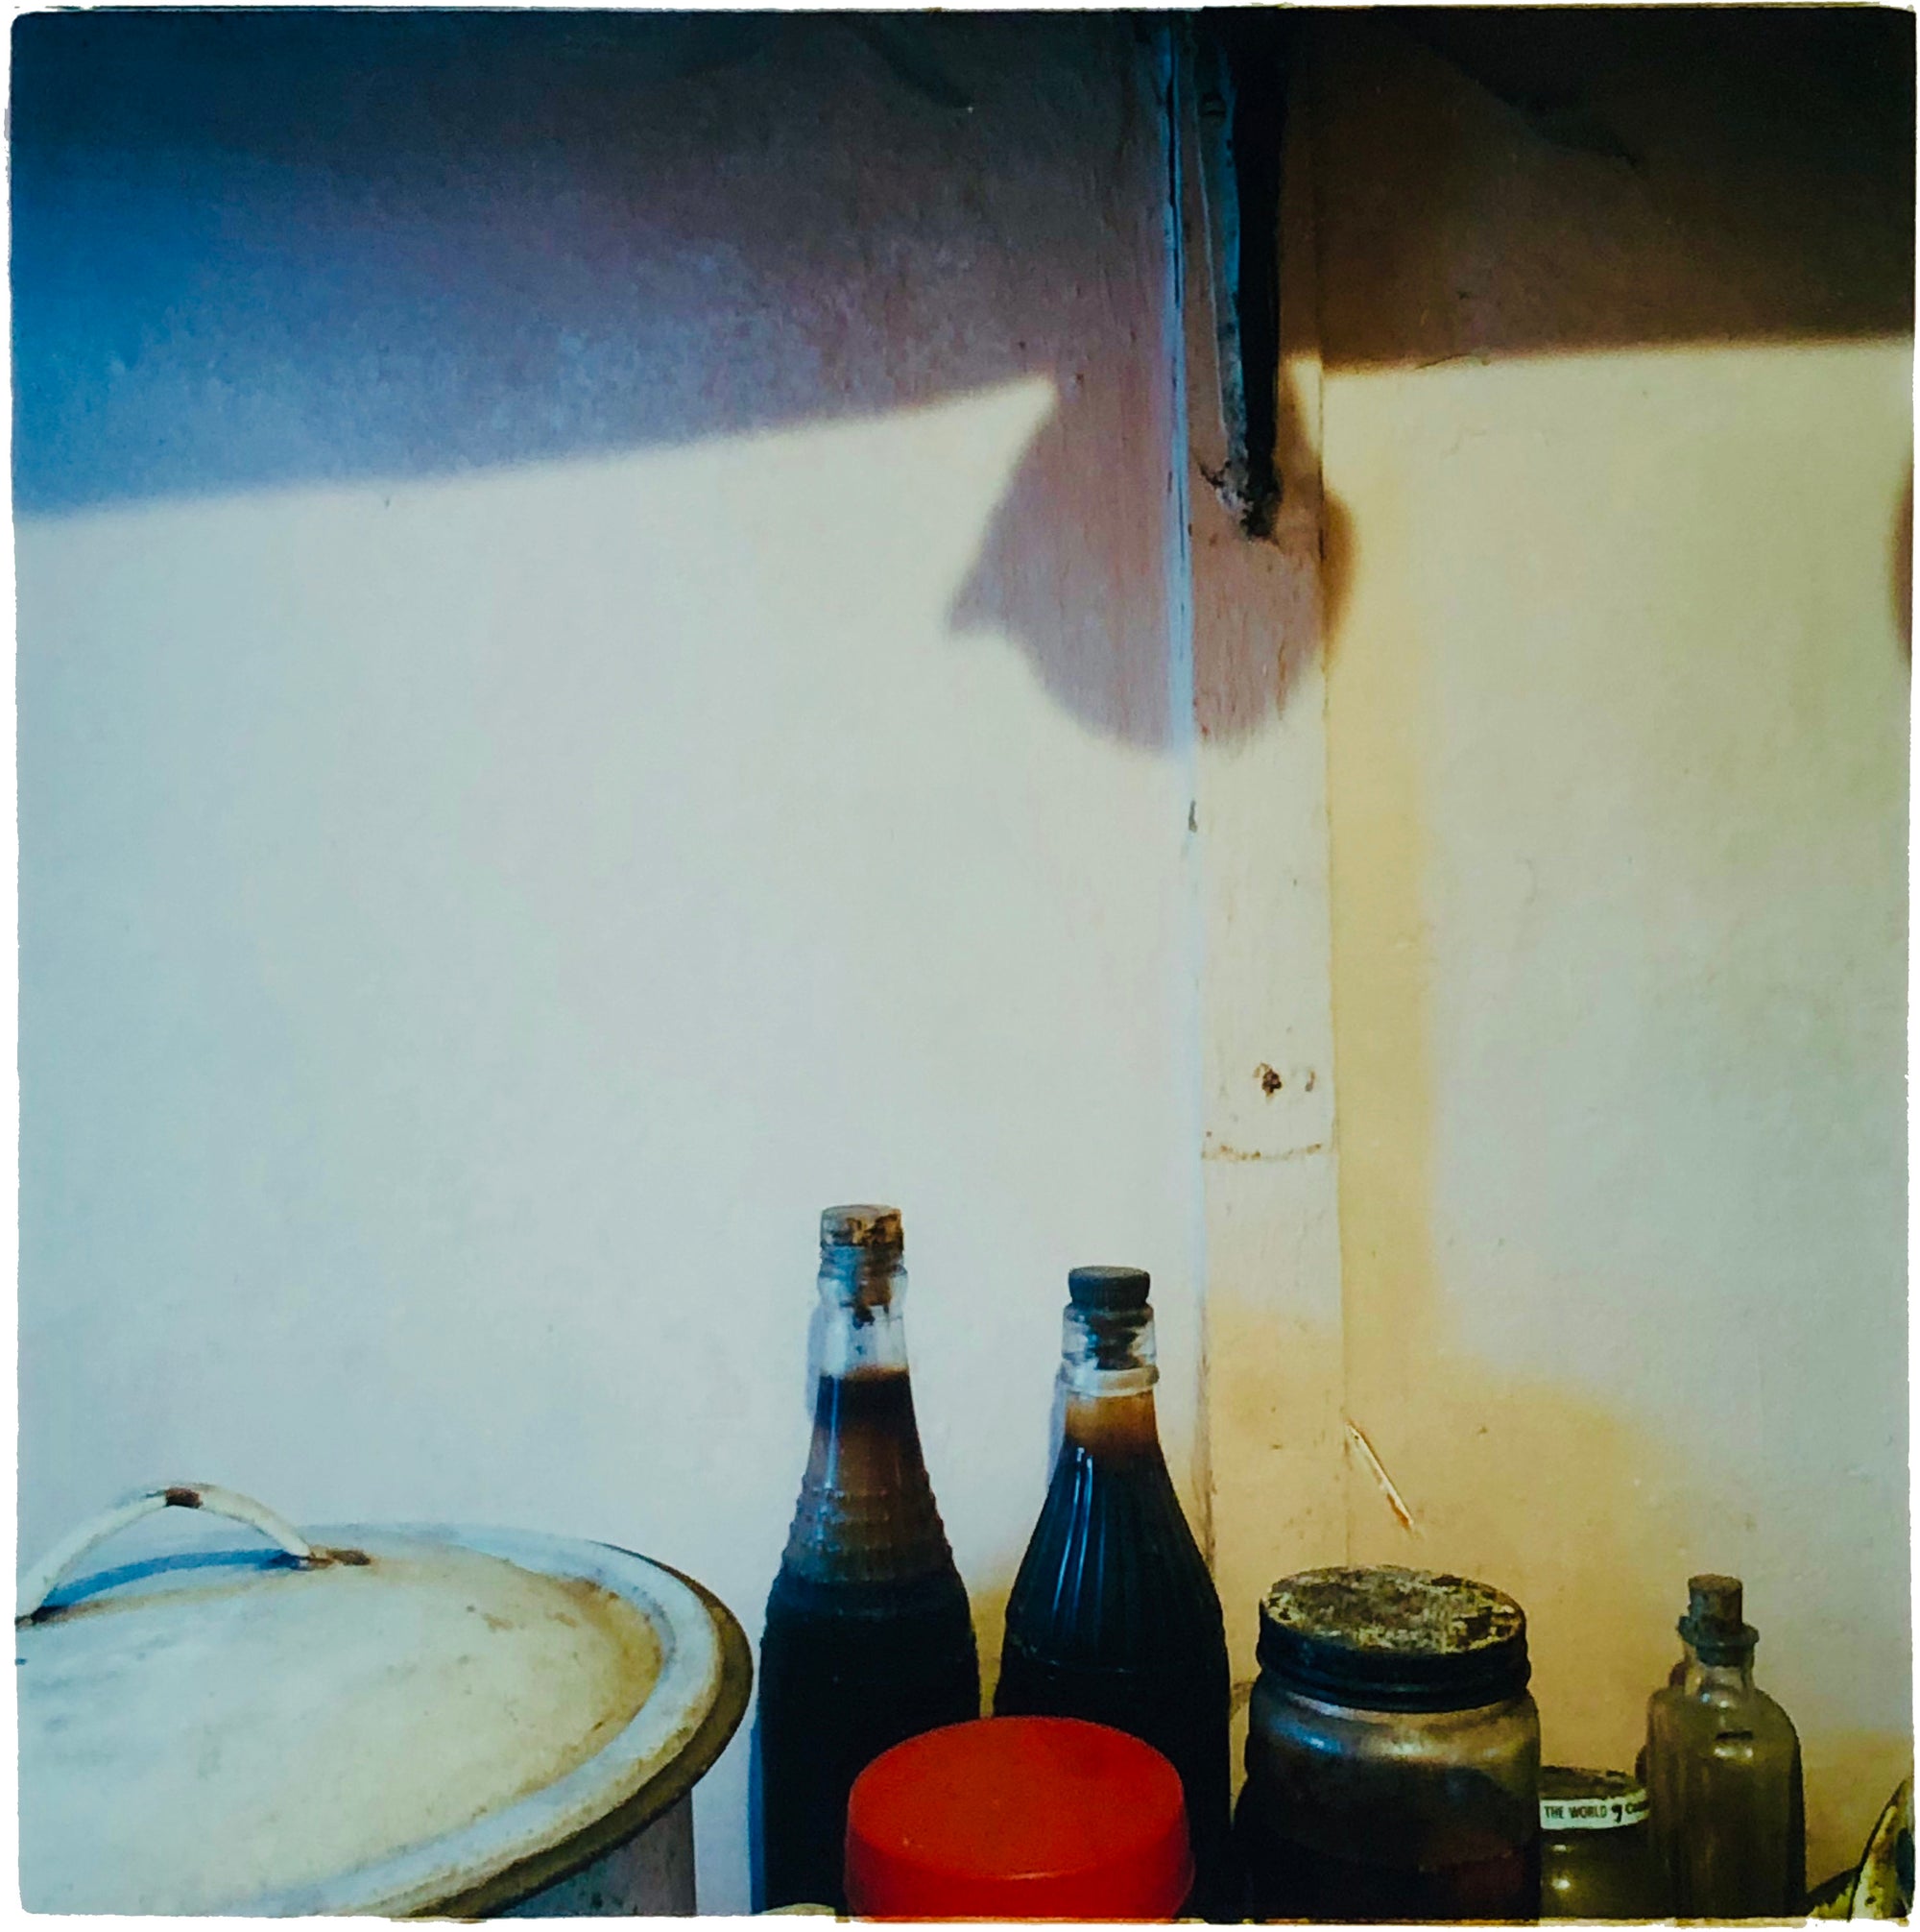 Bottles - Pantry, Manea, 1986